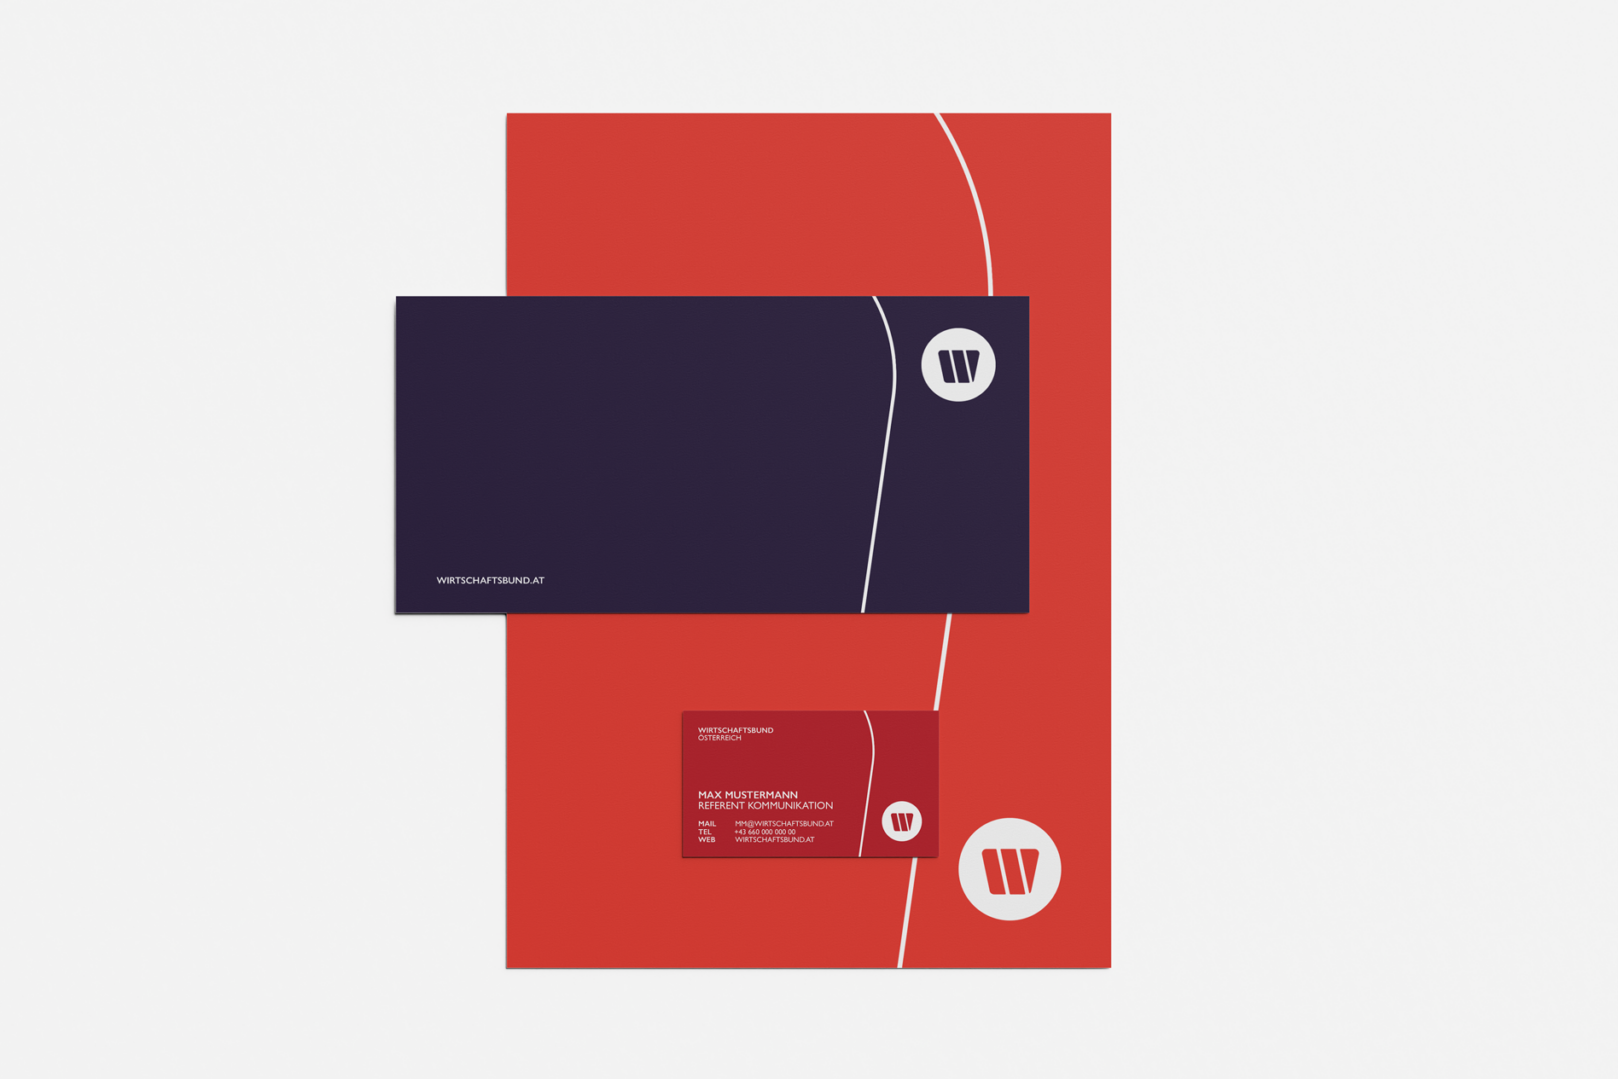 Wirtschaftsbund Geschaeftsmaterial bestehend aus Briefpapier, Karte und Visitenkarte in den Farben Orange, Violett und Rot inklusive Logo und Key-Visual.